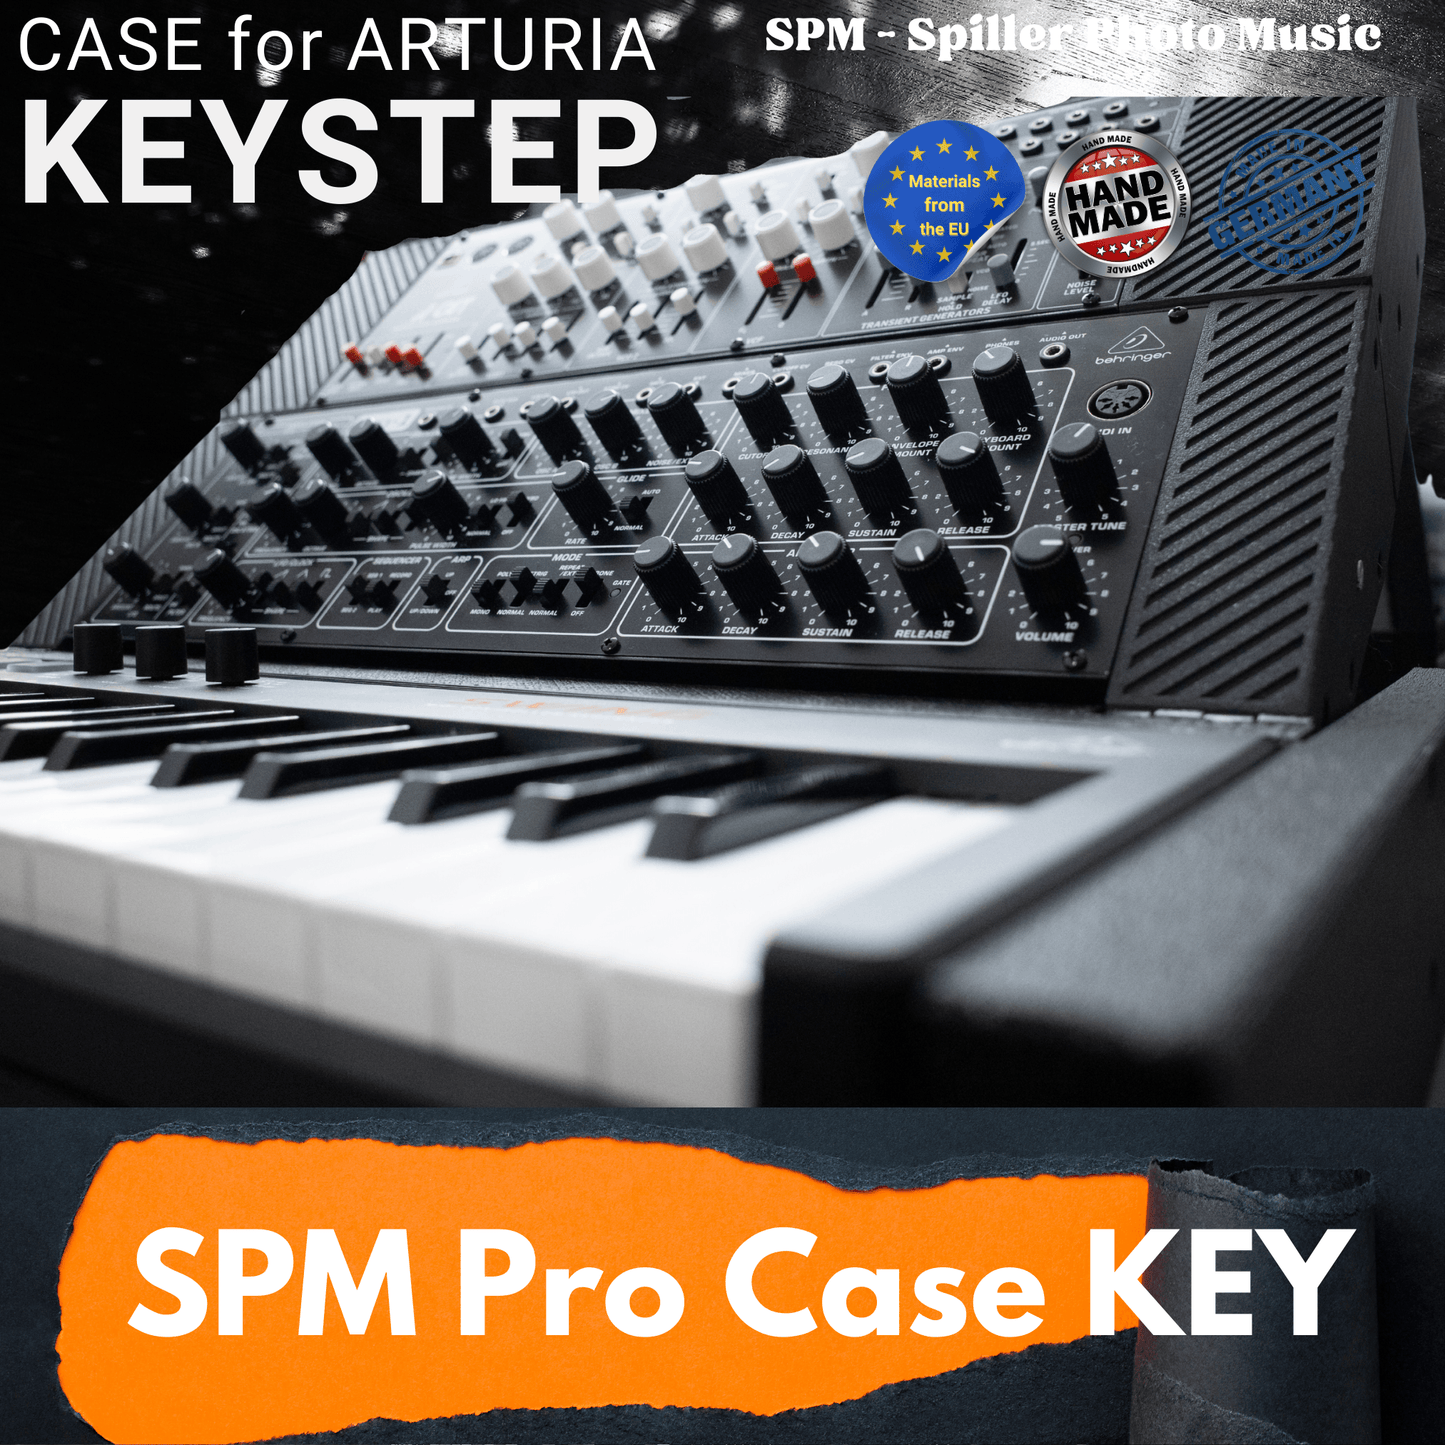 SPM Pro Case KEYSTEP für Behringer Desktop Synthesizer Pro-800, Cat, K2, Model D, Neutron, Pro-1 und WASP Deluxe - SPM - Spillerphoto & Music